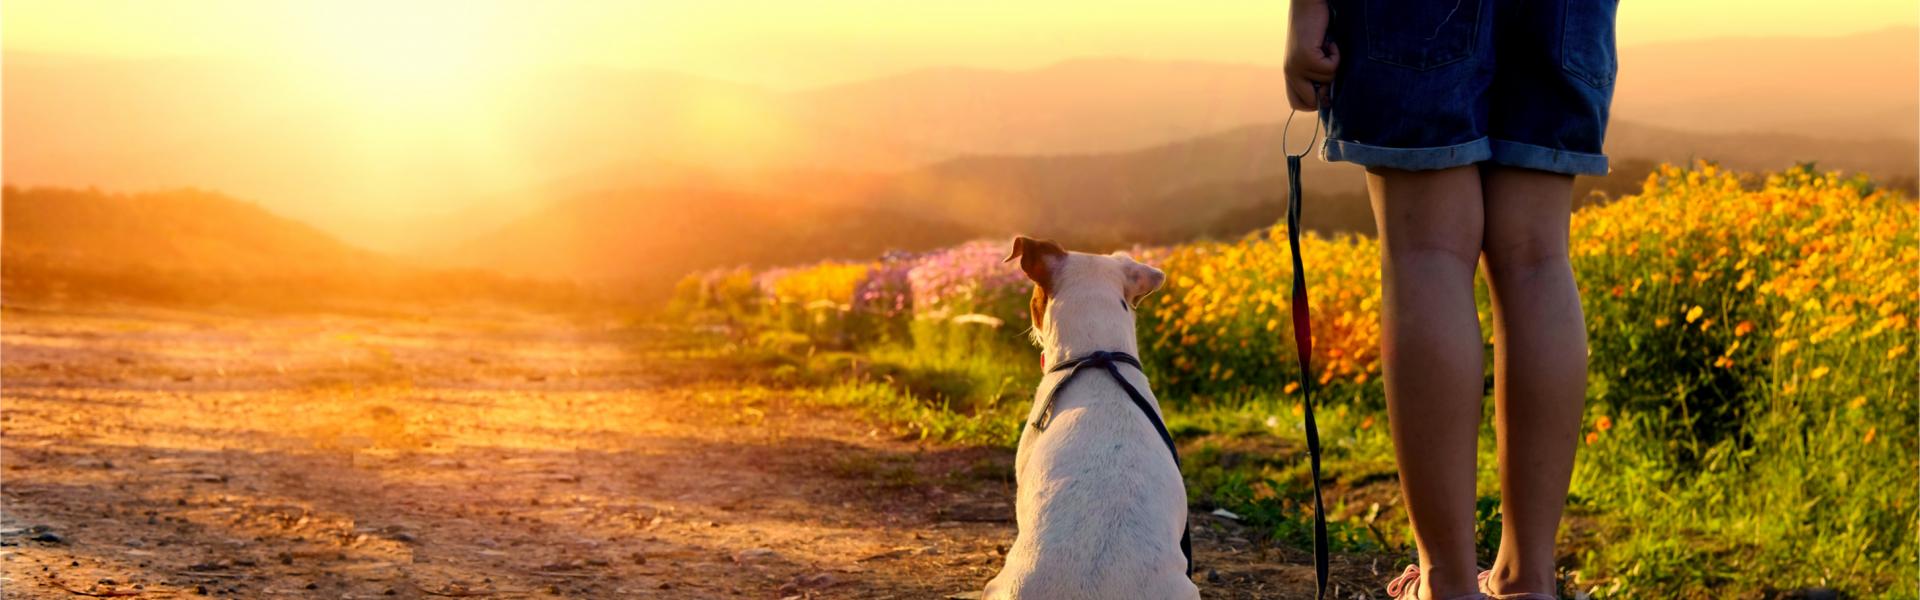 Urlaub mit Hund an der Côte d'Azur - Casamundo